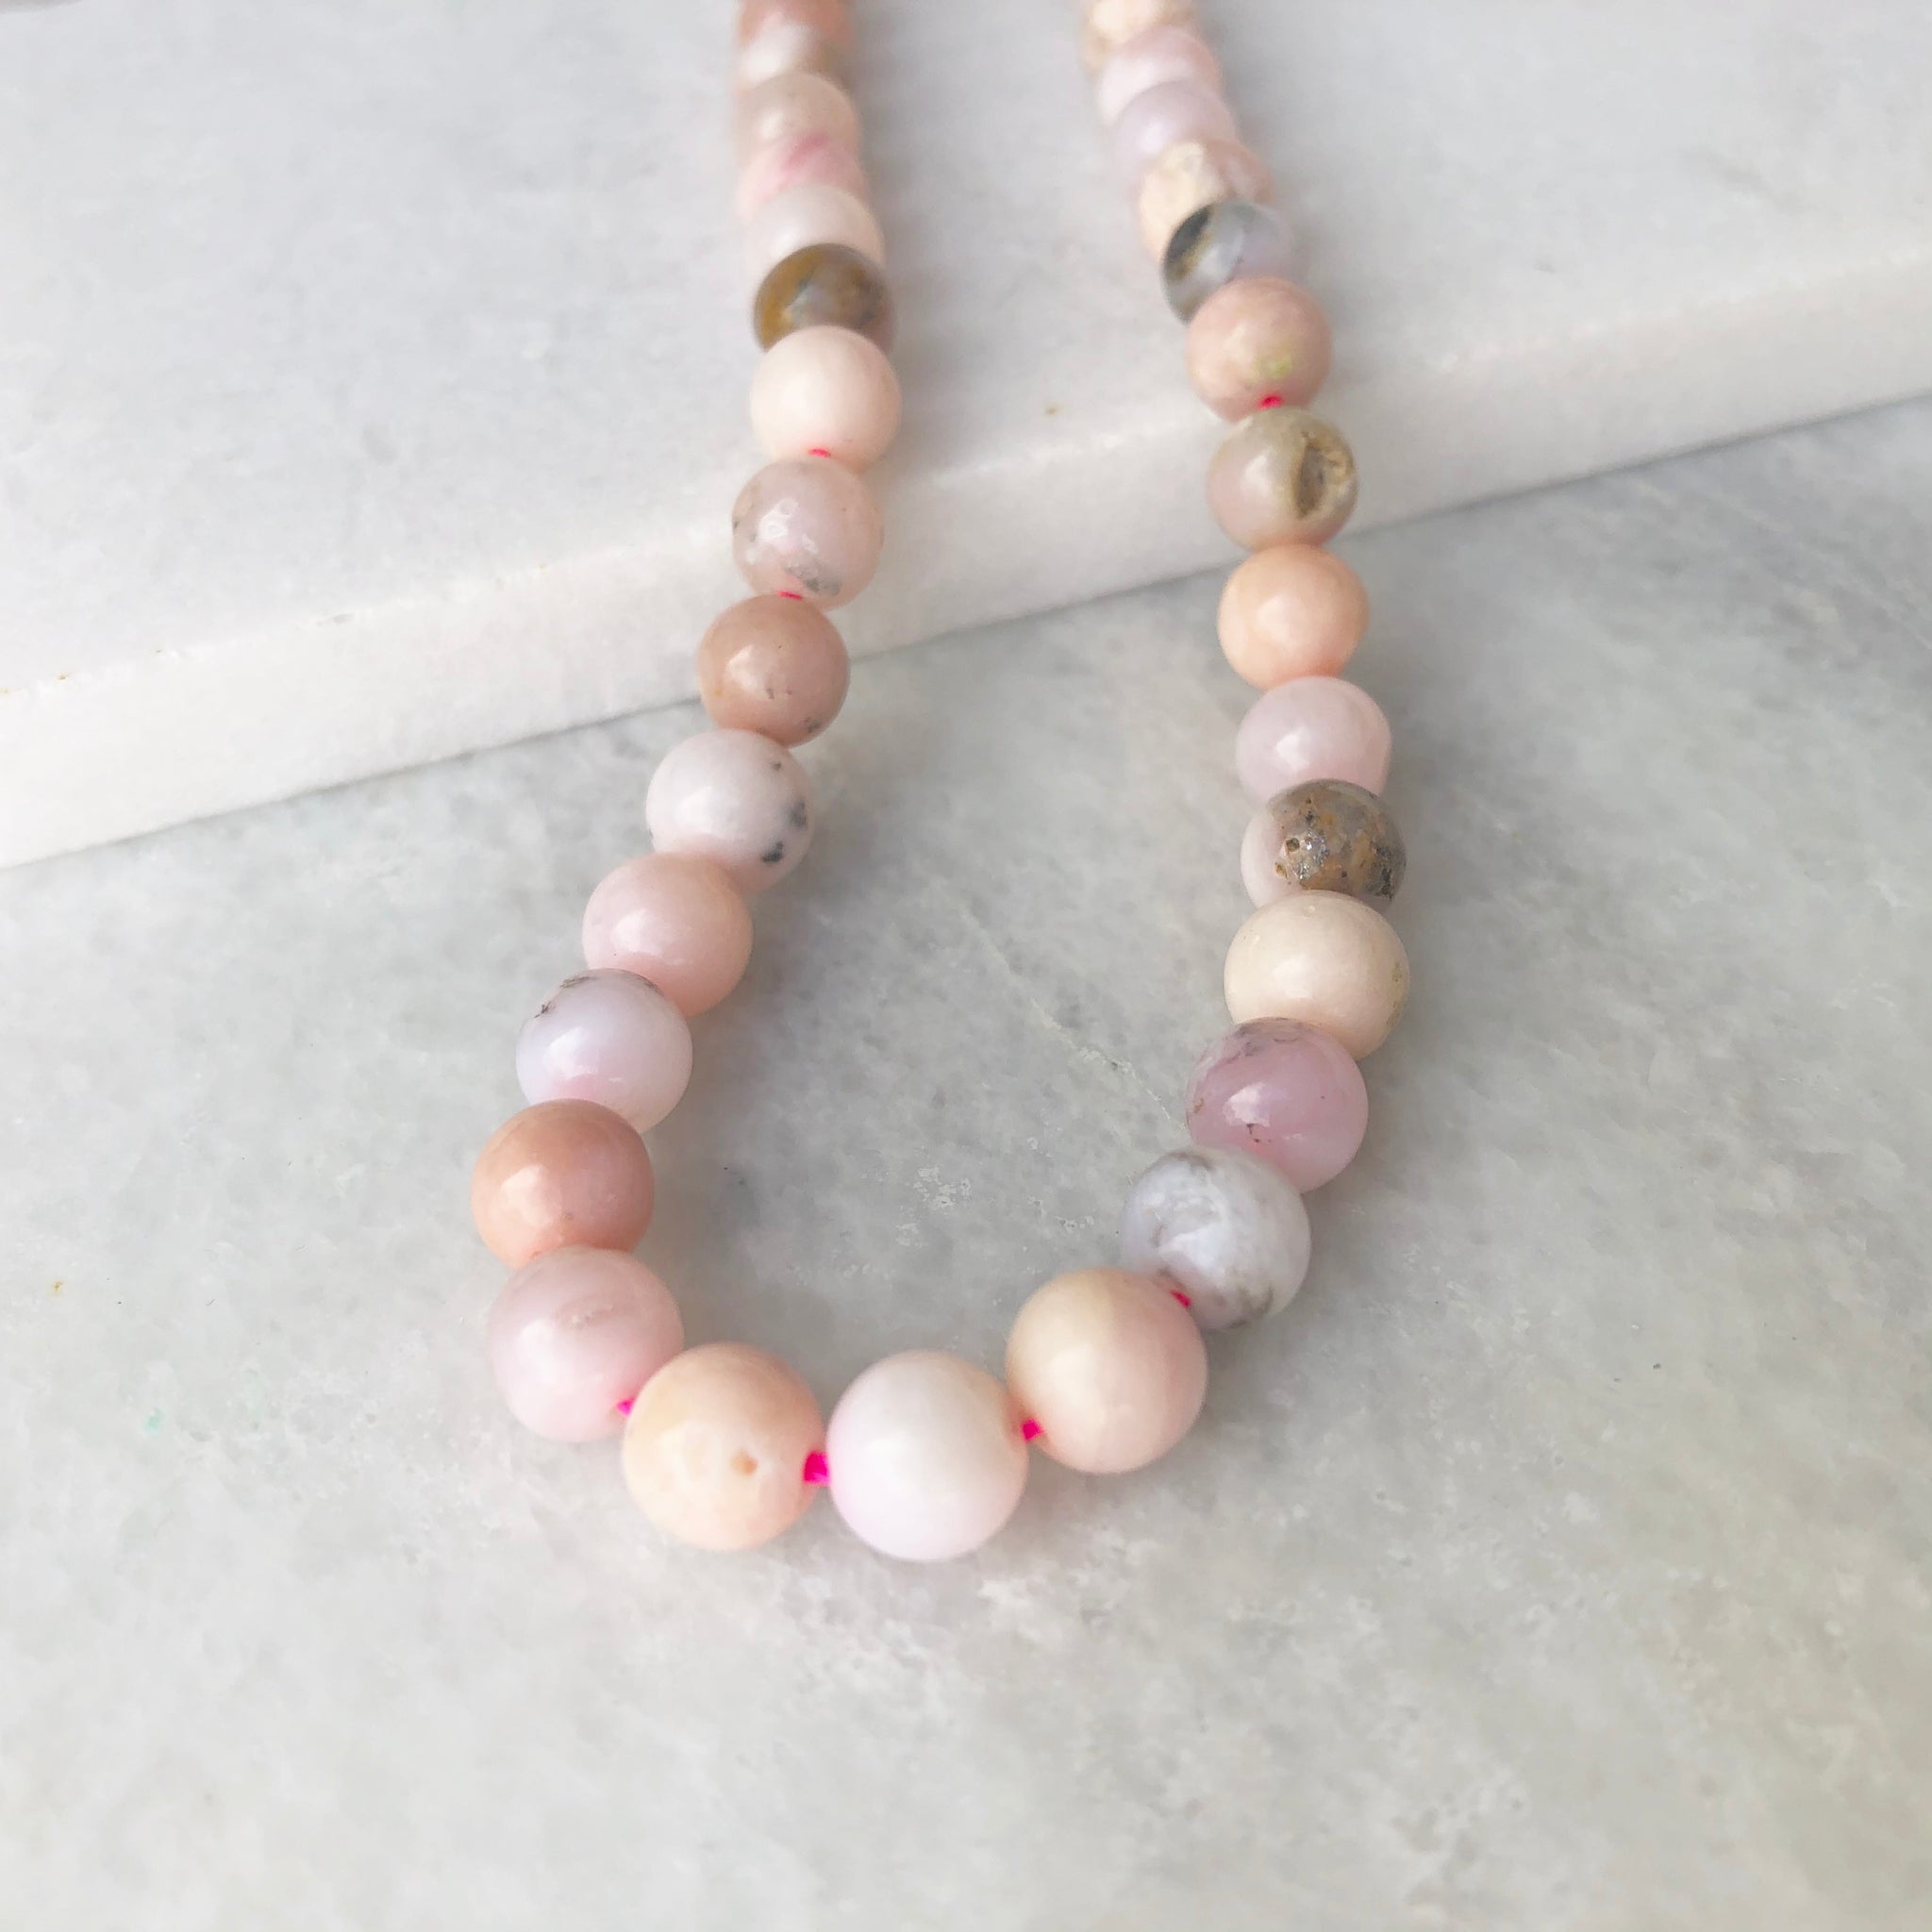 Peruvian Pink Opal Beads - Gemstone Beads - Pink Opal Nuggets